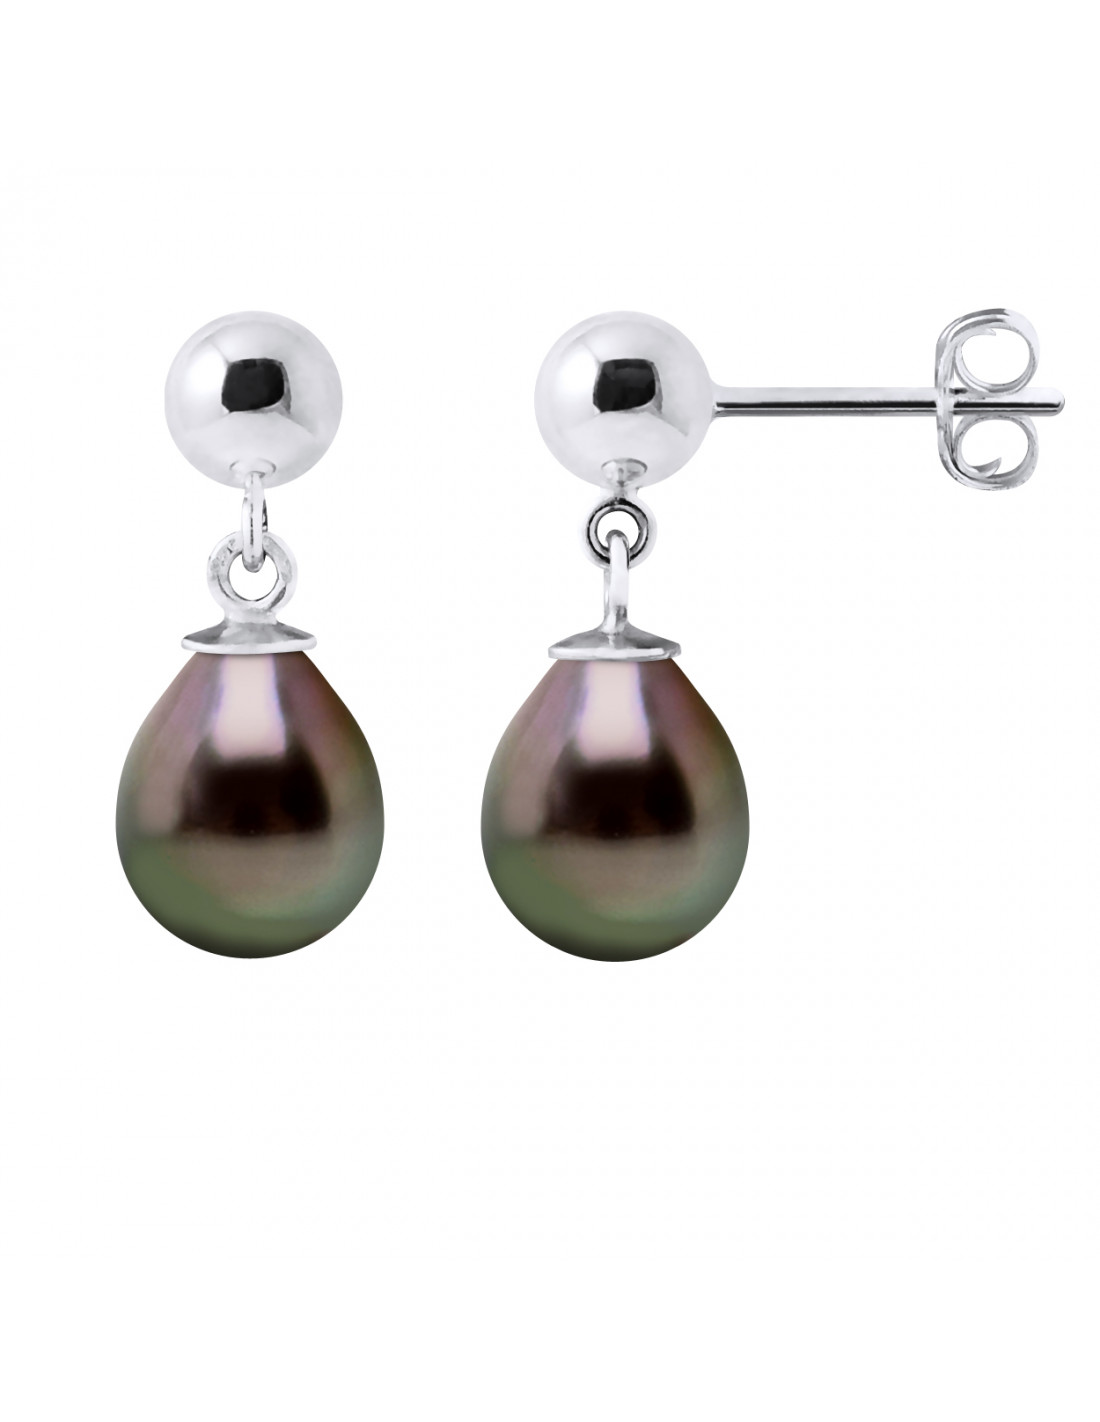 Boucles d'Oreilles Pendantes en Argent 925 et Perles de Tahiti Poires 8 mm  - MATARAM